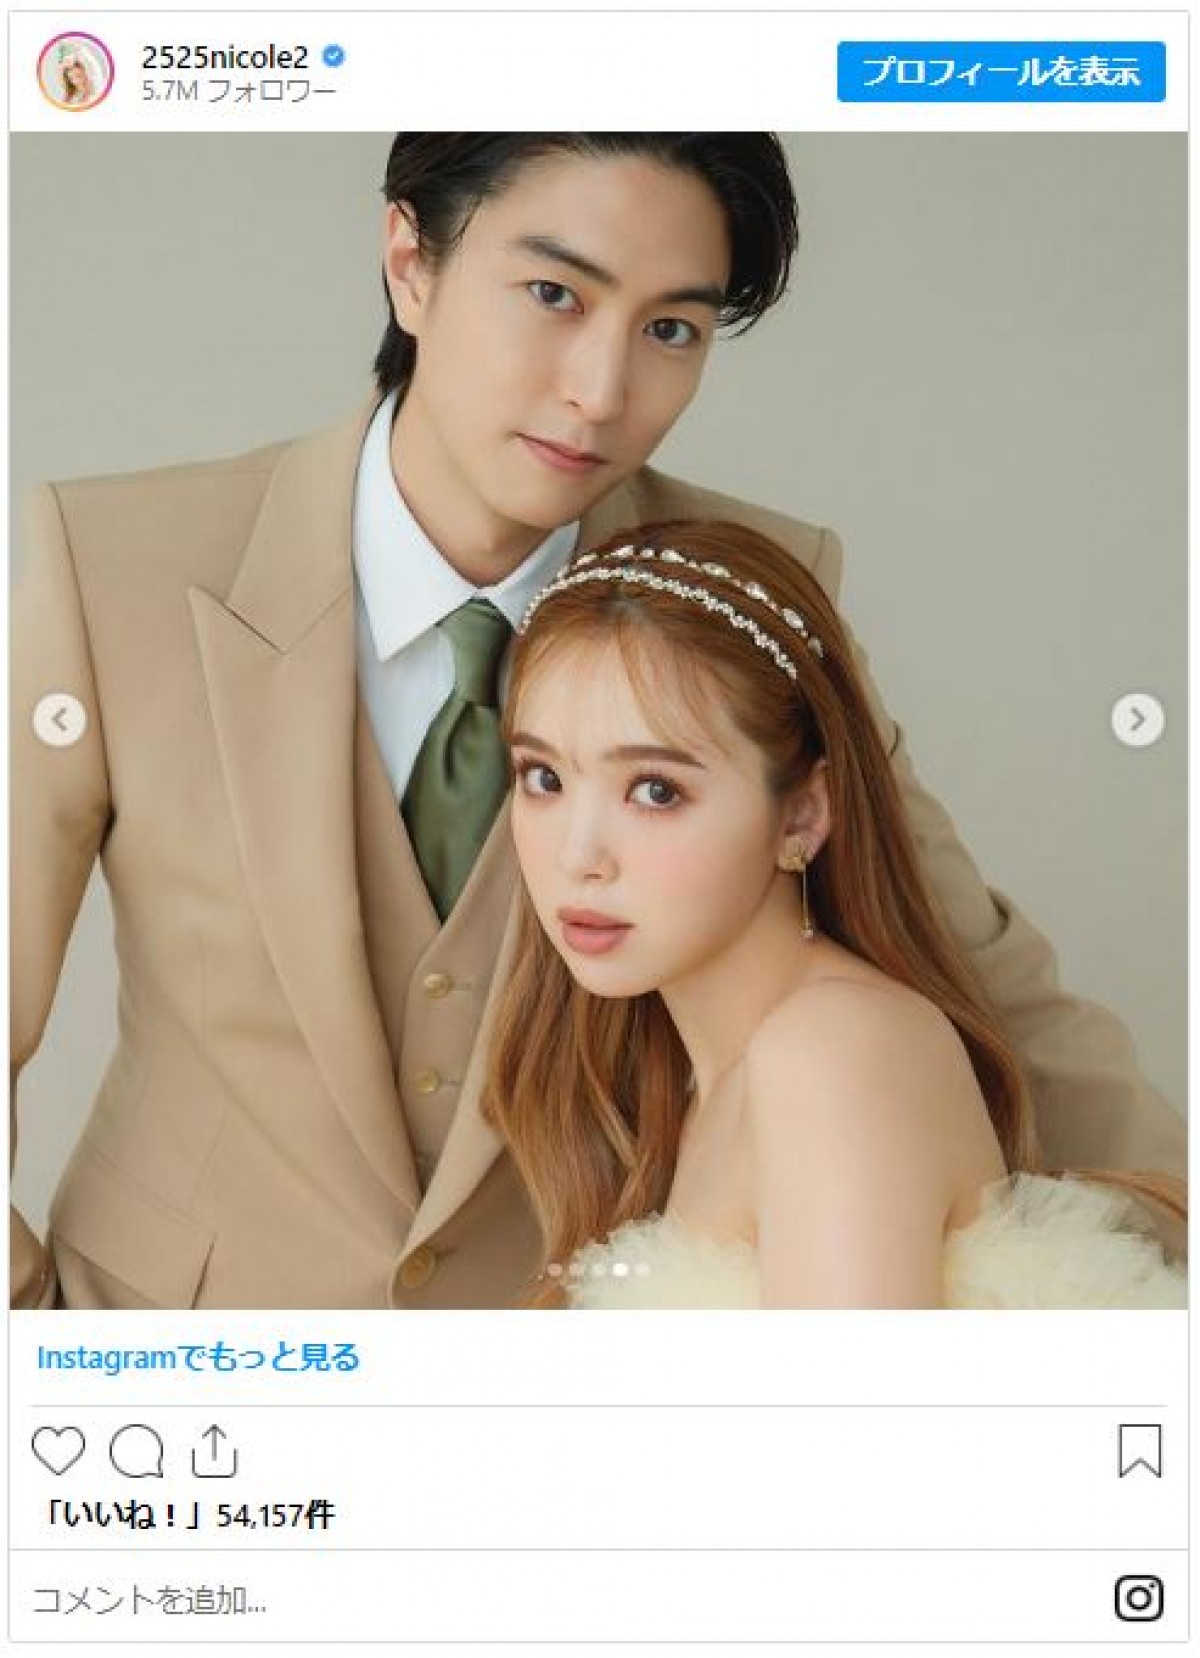 藤田ニコルが稲葉友と結婚「穏やかで幸せな家庭を築いて参ります」【コメント全文】